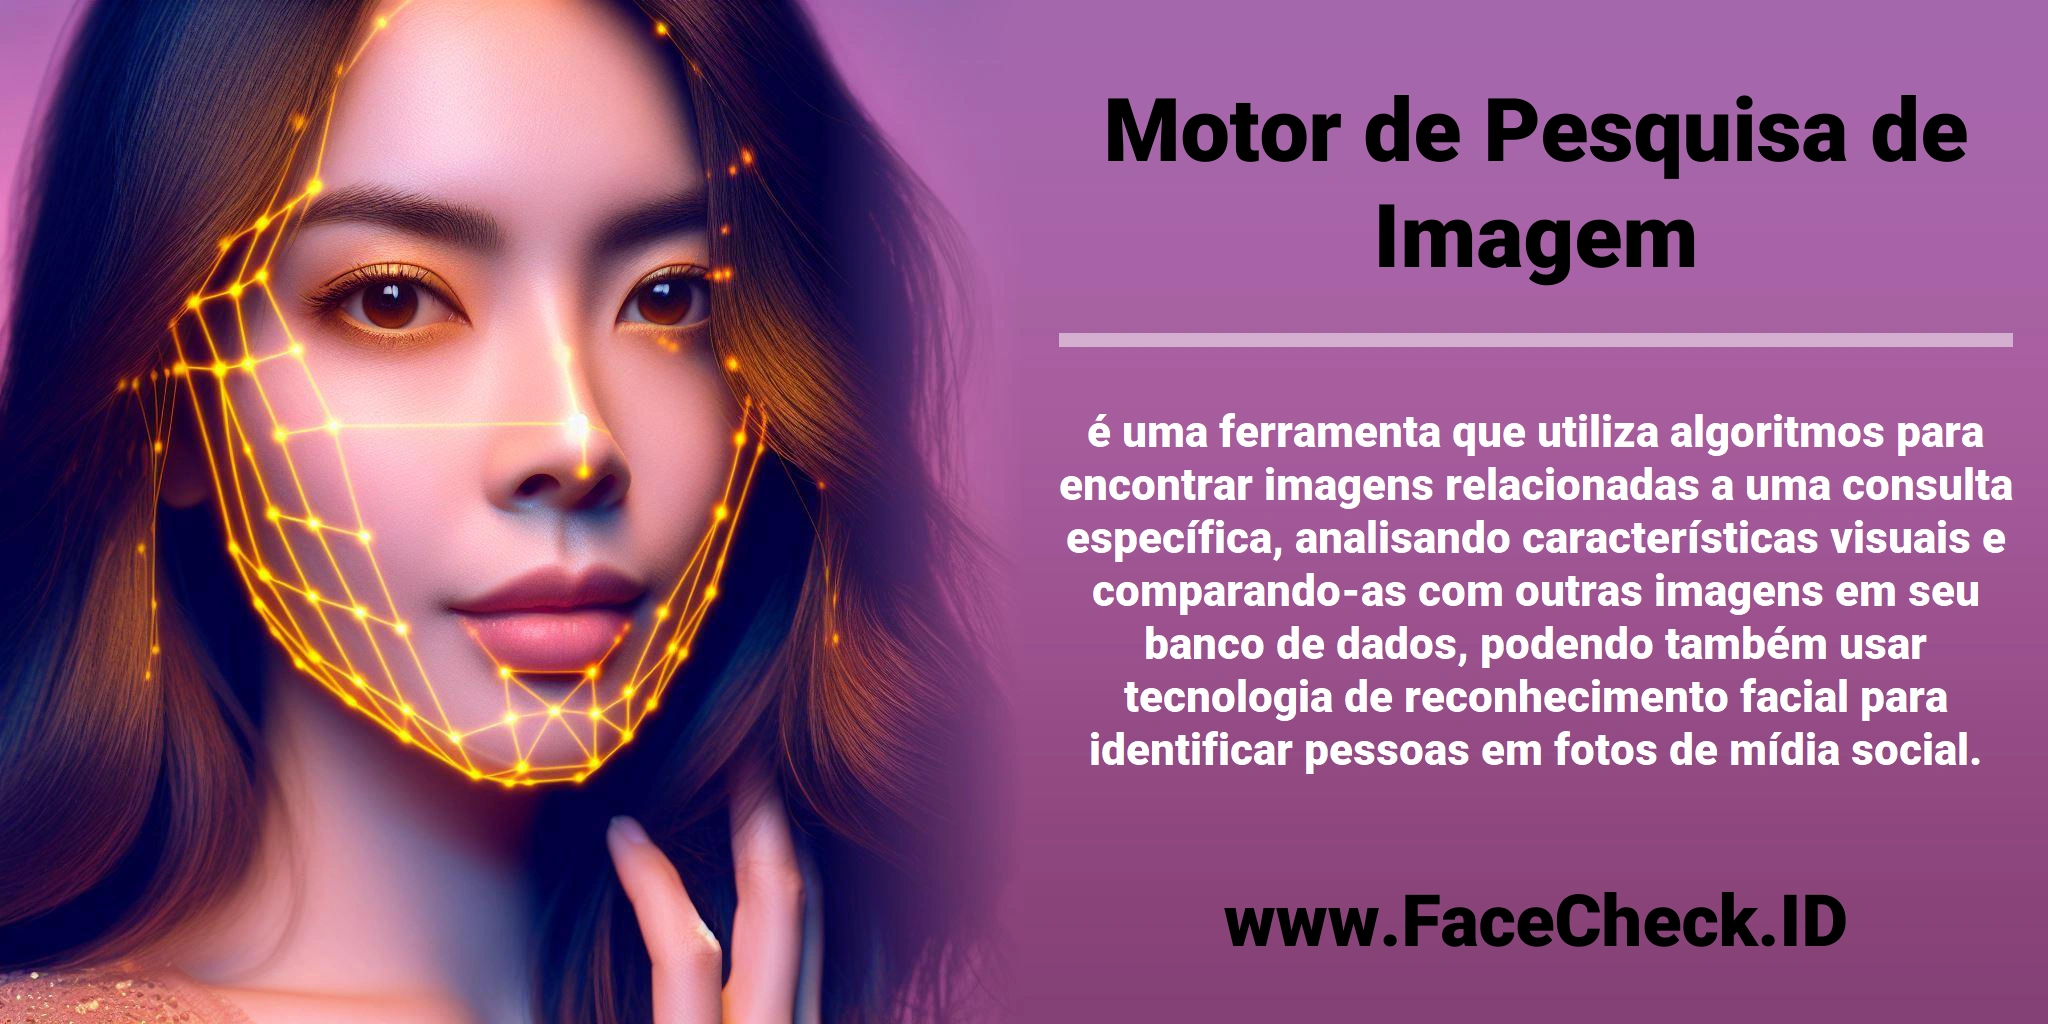 <b>Motor de Pesquisa de Imagem</b> é uma ferramenta que utiliza algoritmos para encontrar imagens relacionadas a uma consulta específica, analisando características visuais e comparando-as com outras imagens em seu banco de dados, podendo também usar tecnologia de reconhecimento facial para identificar pessoas em fotos de mídia social.